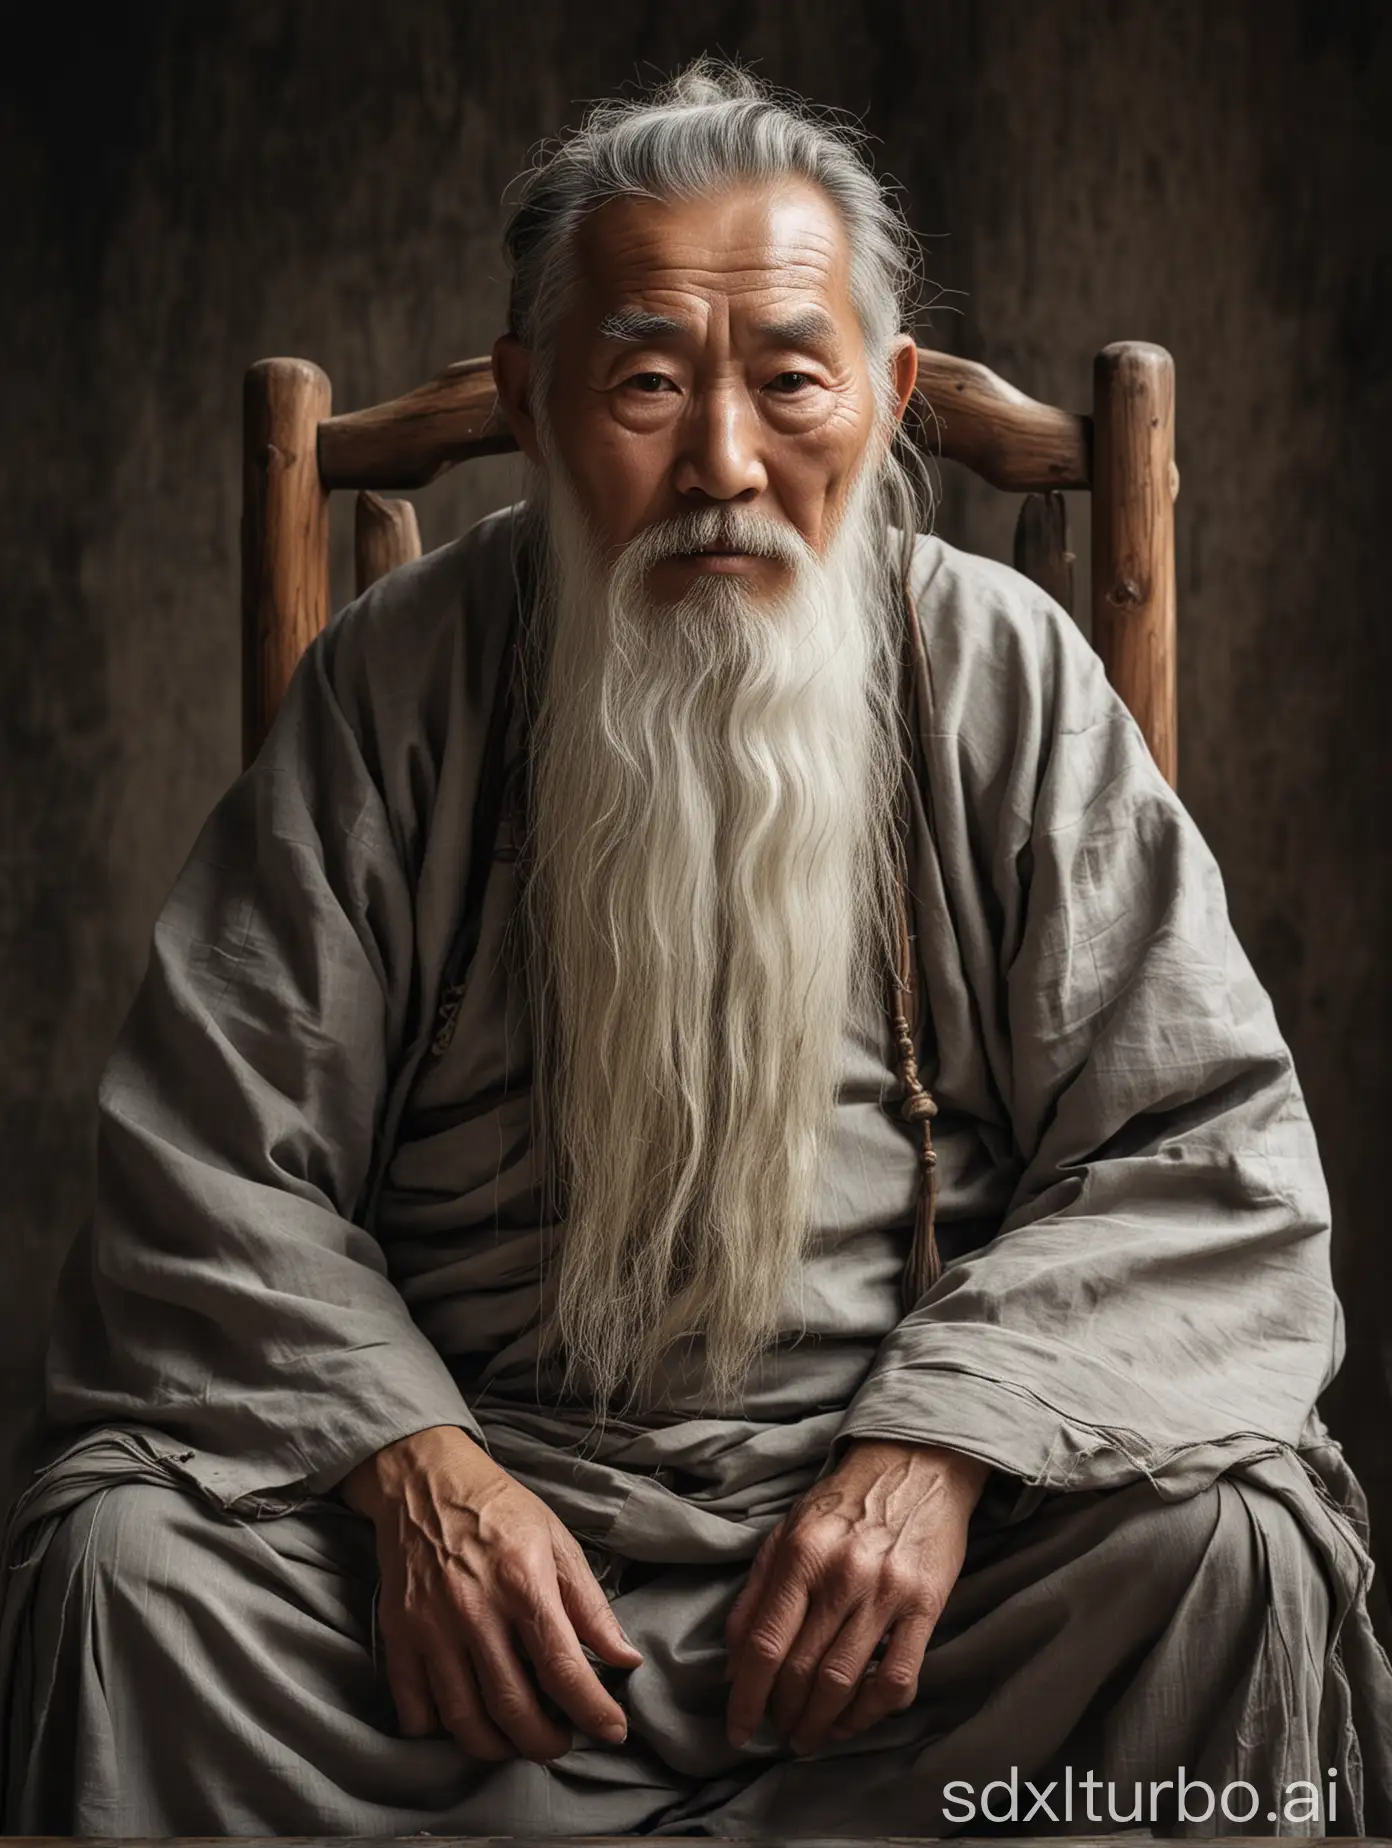 一个白胡子老道士，正面，苍老，满脸皱纹，但充满智慧，像个老神仙，坐在木有椅子上，是中国老道长，穿着中国的中式衣服
